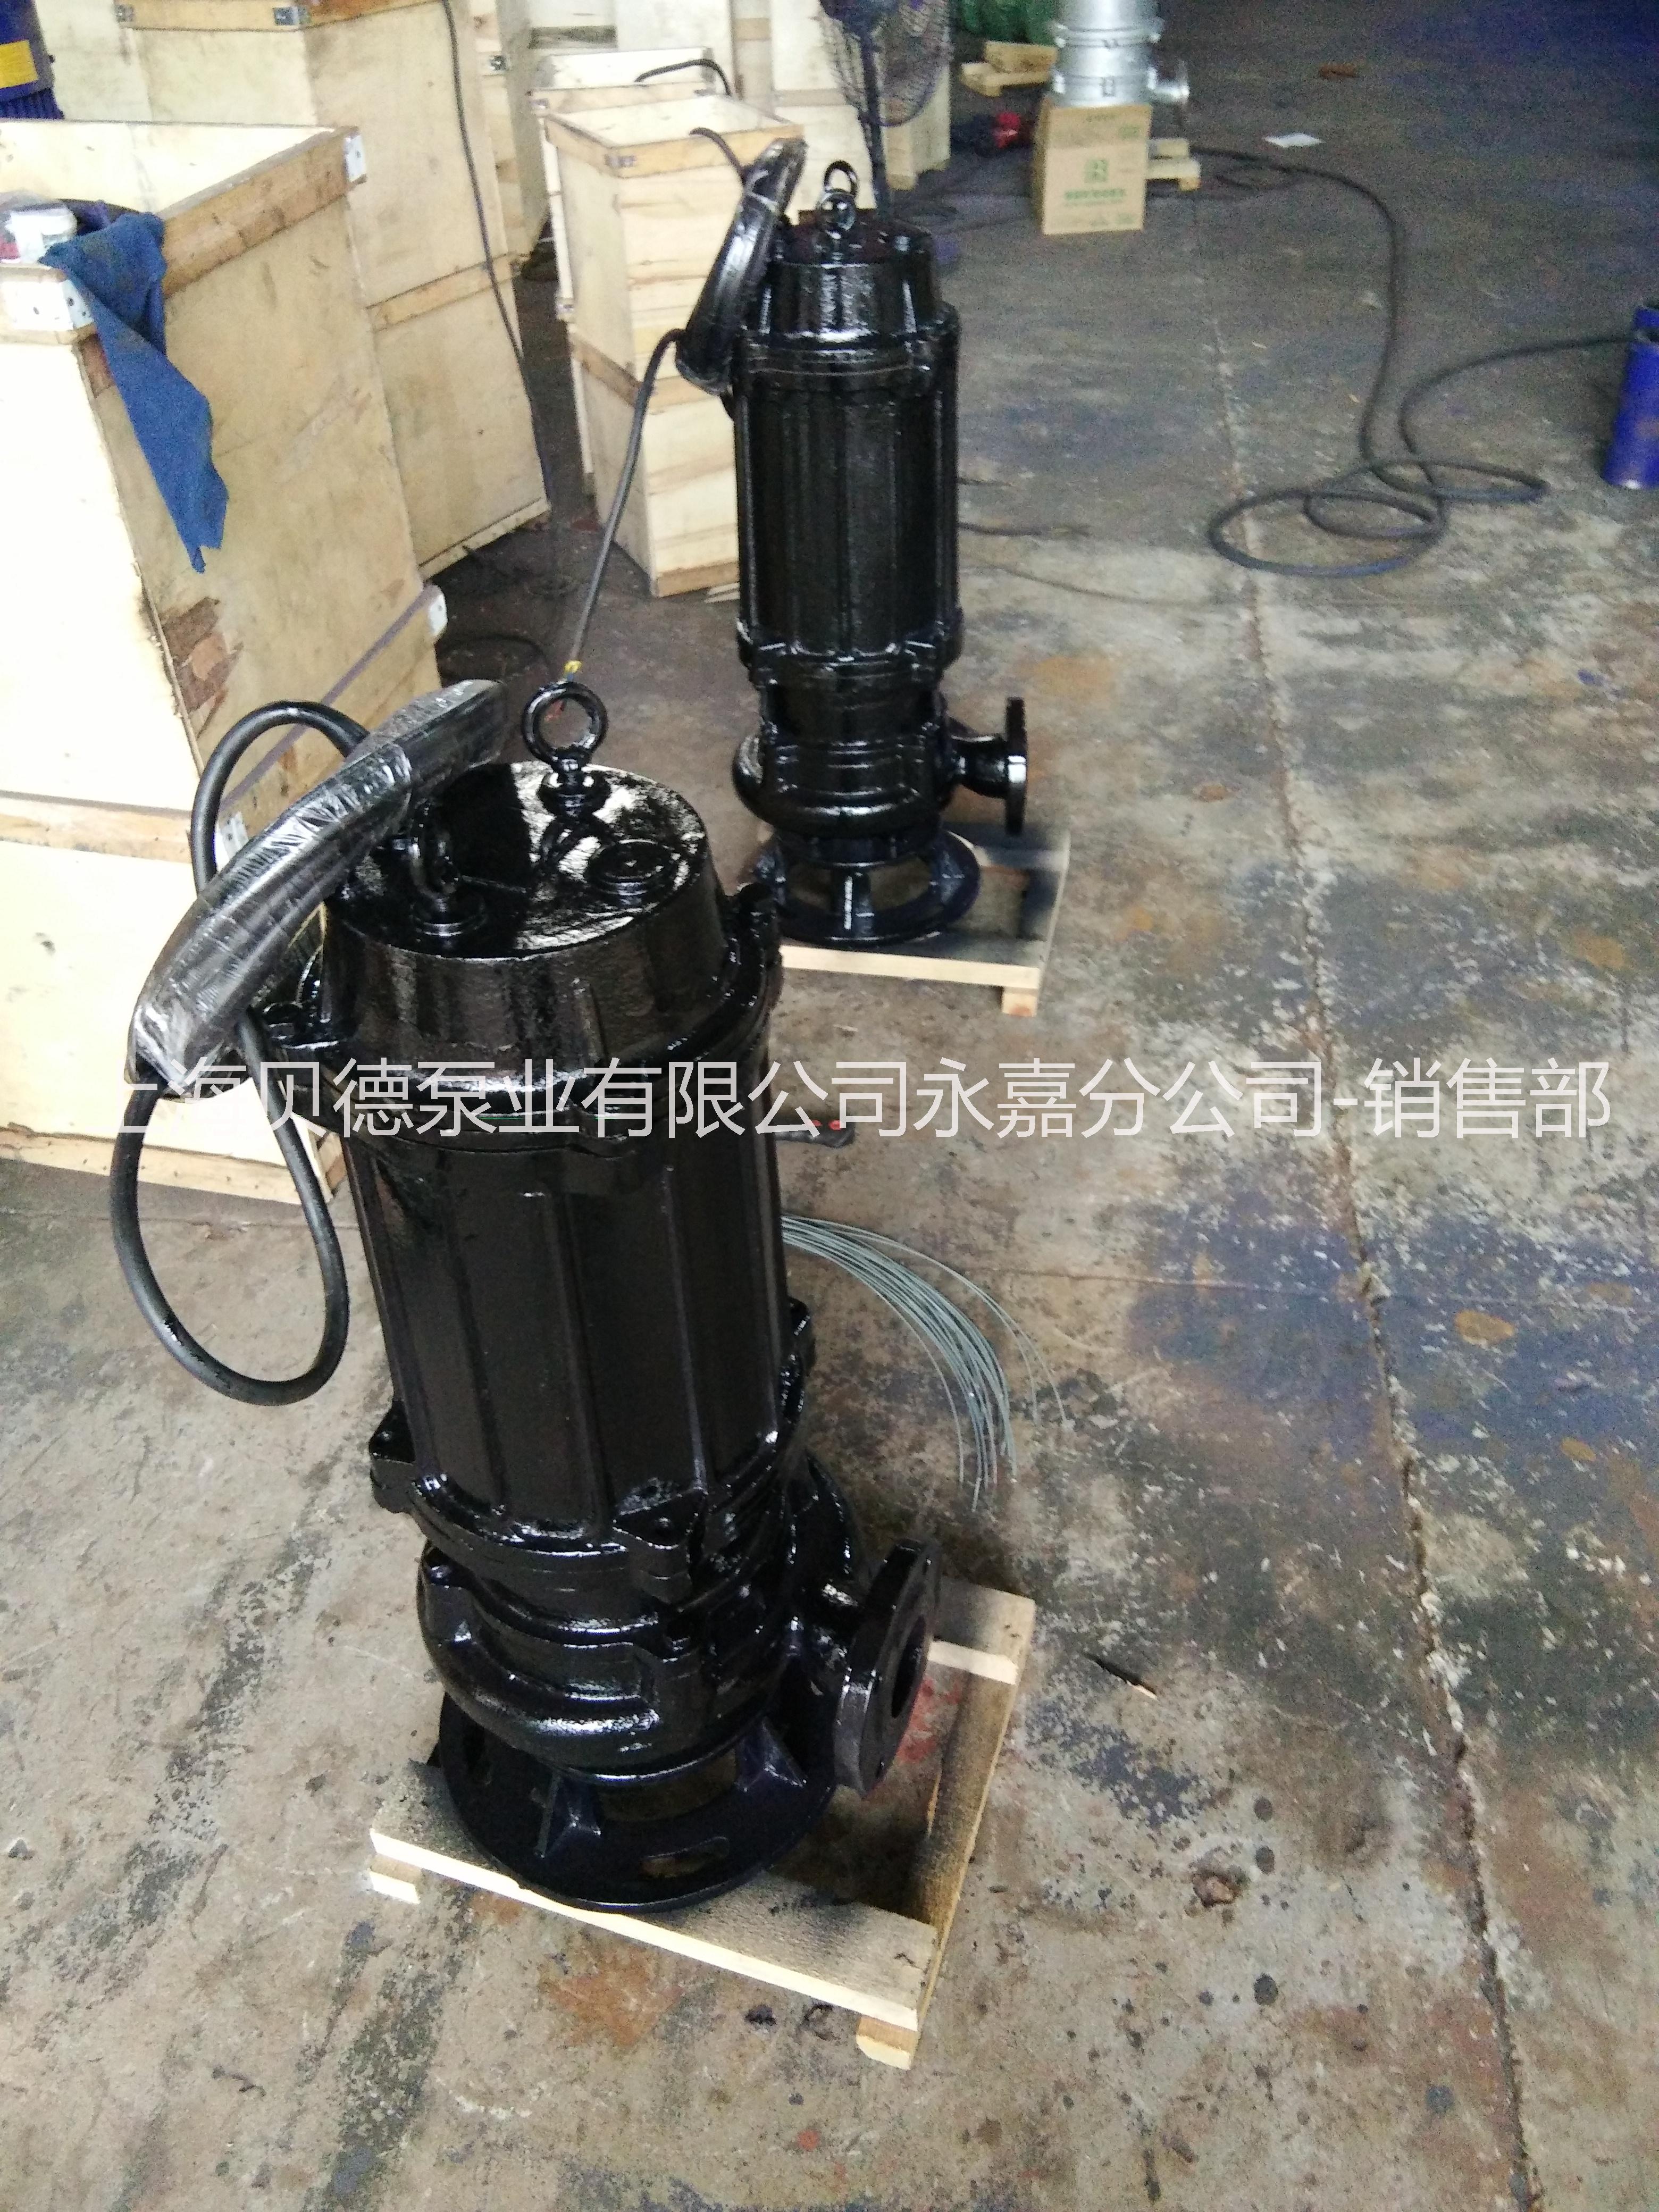 温州市上海贝德泵业厂家上海贝德泵业xbd6.0/5G-L 11kw自动单级单吸管道泵， 铸铁材质，CCCF消防泵